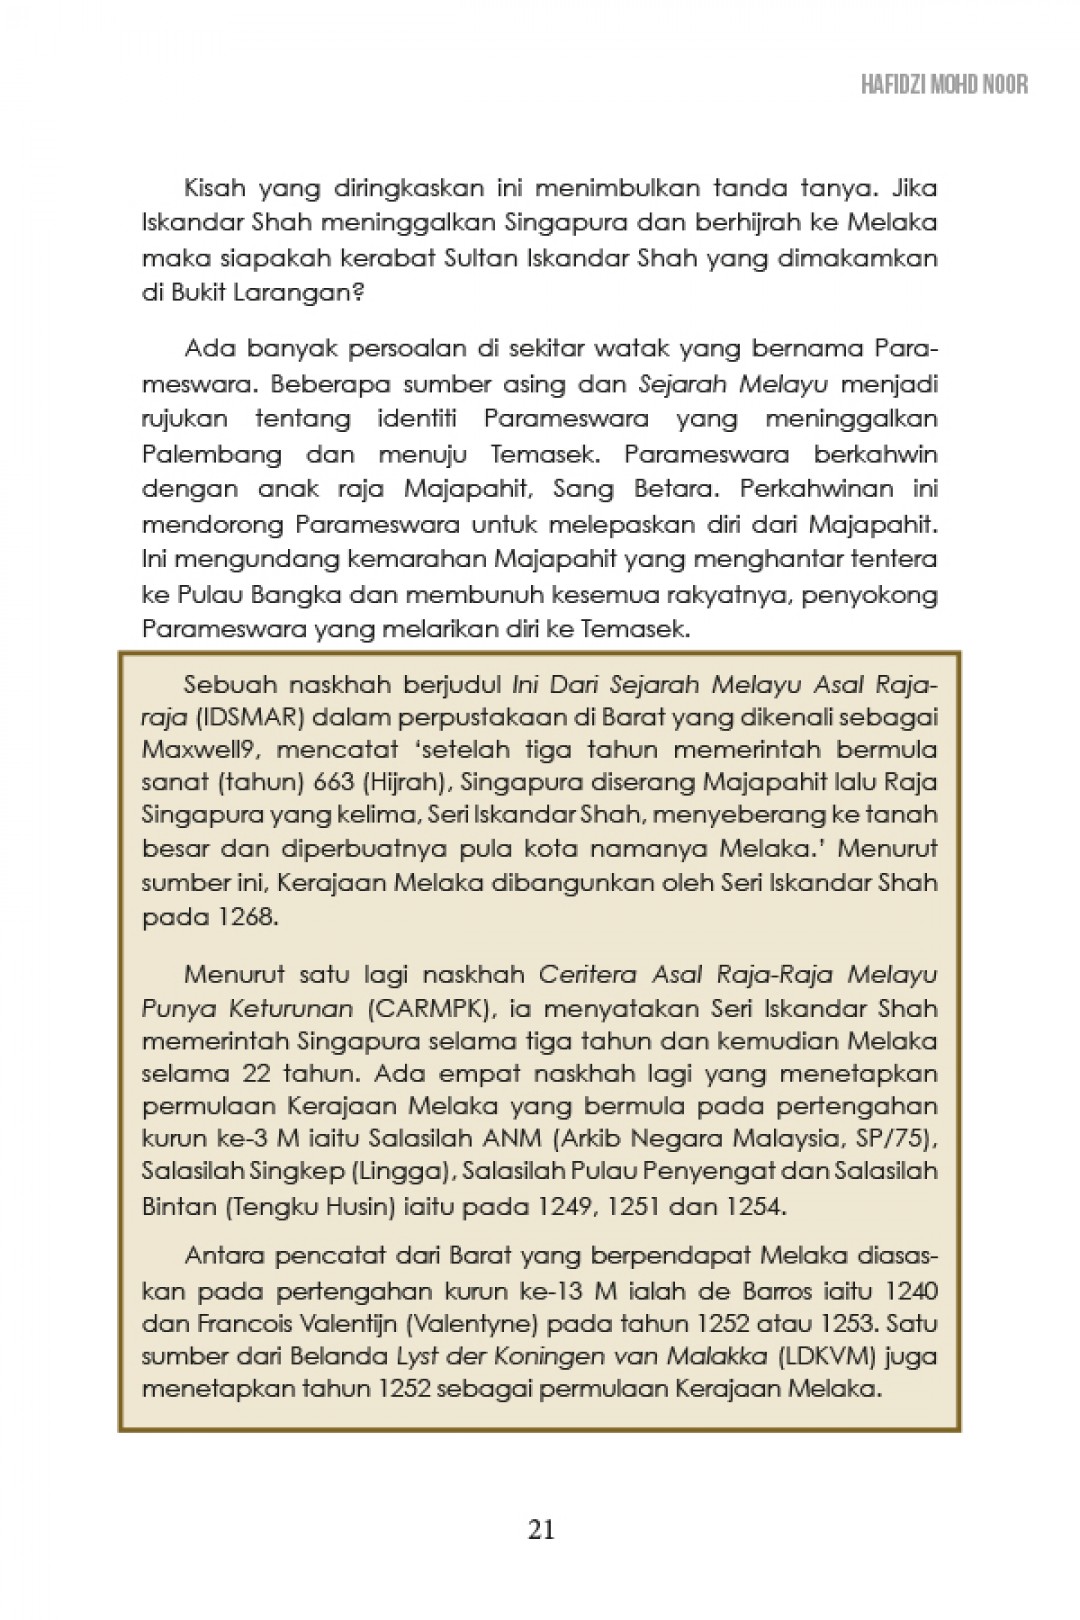 Fajar Islam Di Nusantara 2 - Hafidzi Mohd Noor